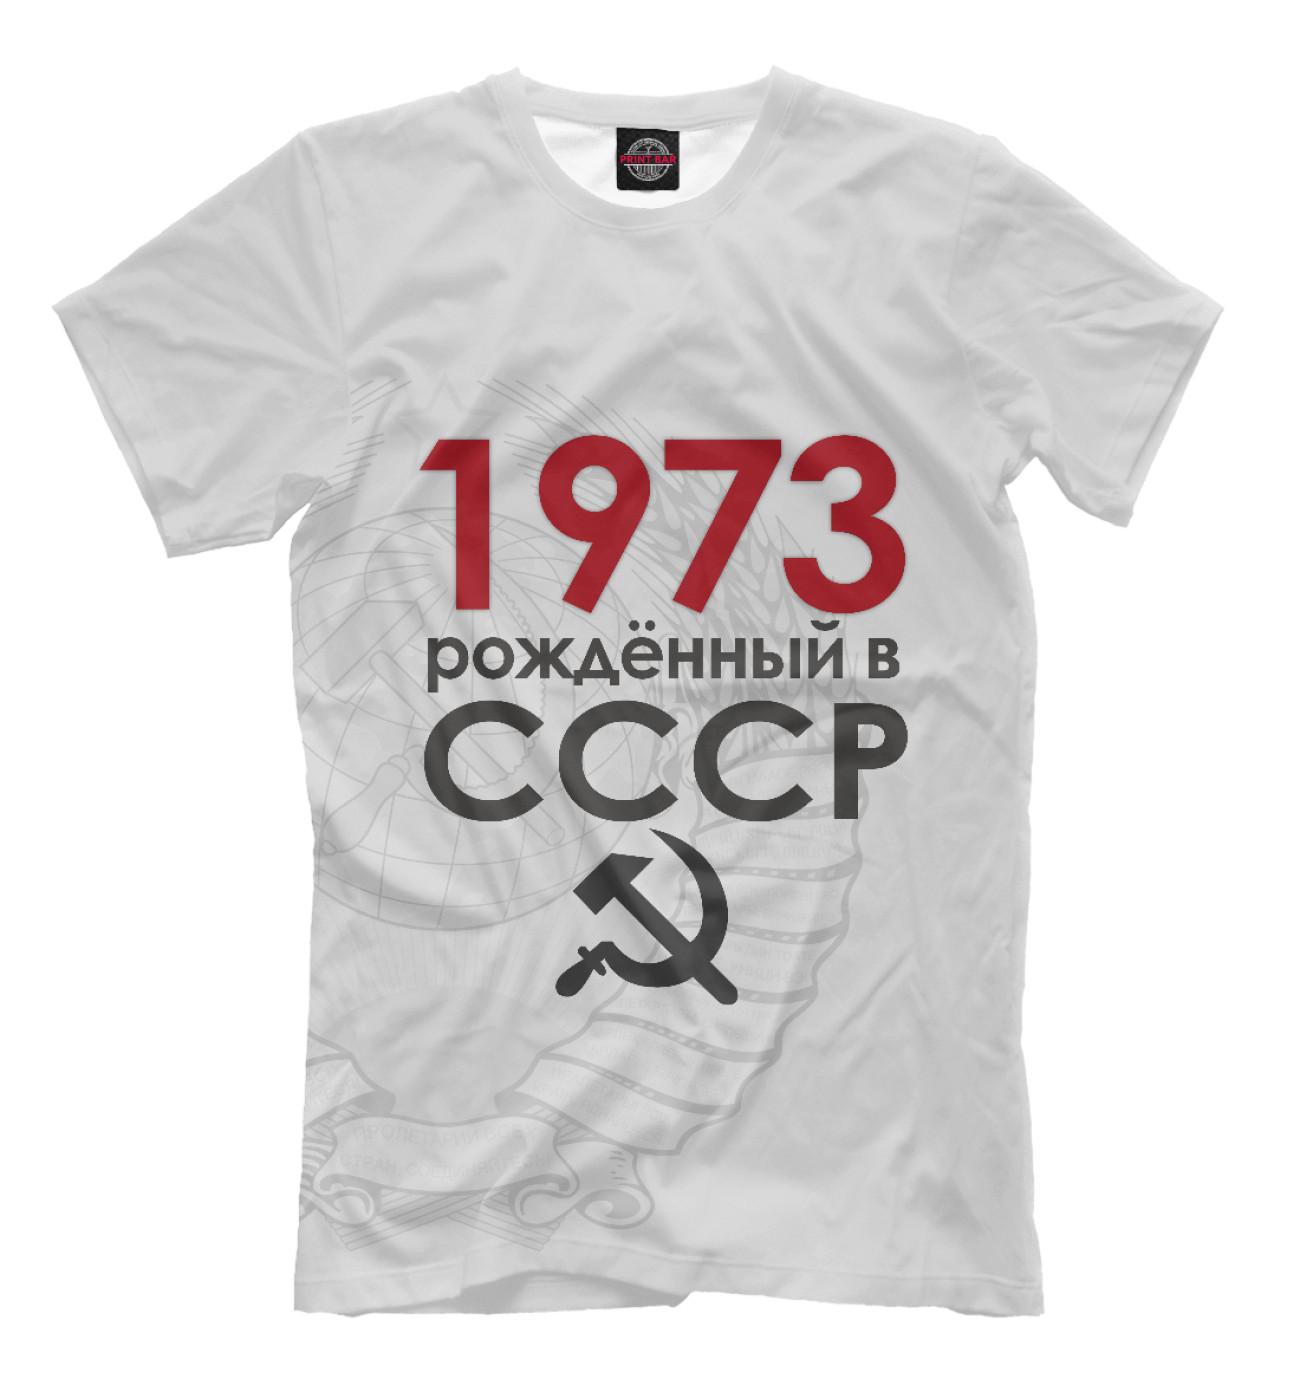 Мужская Футболка Рожденный в СССР 1973, артикул: DSM-550942-fut-2